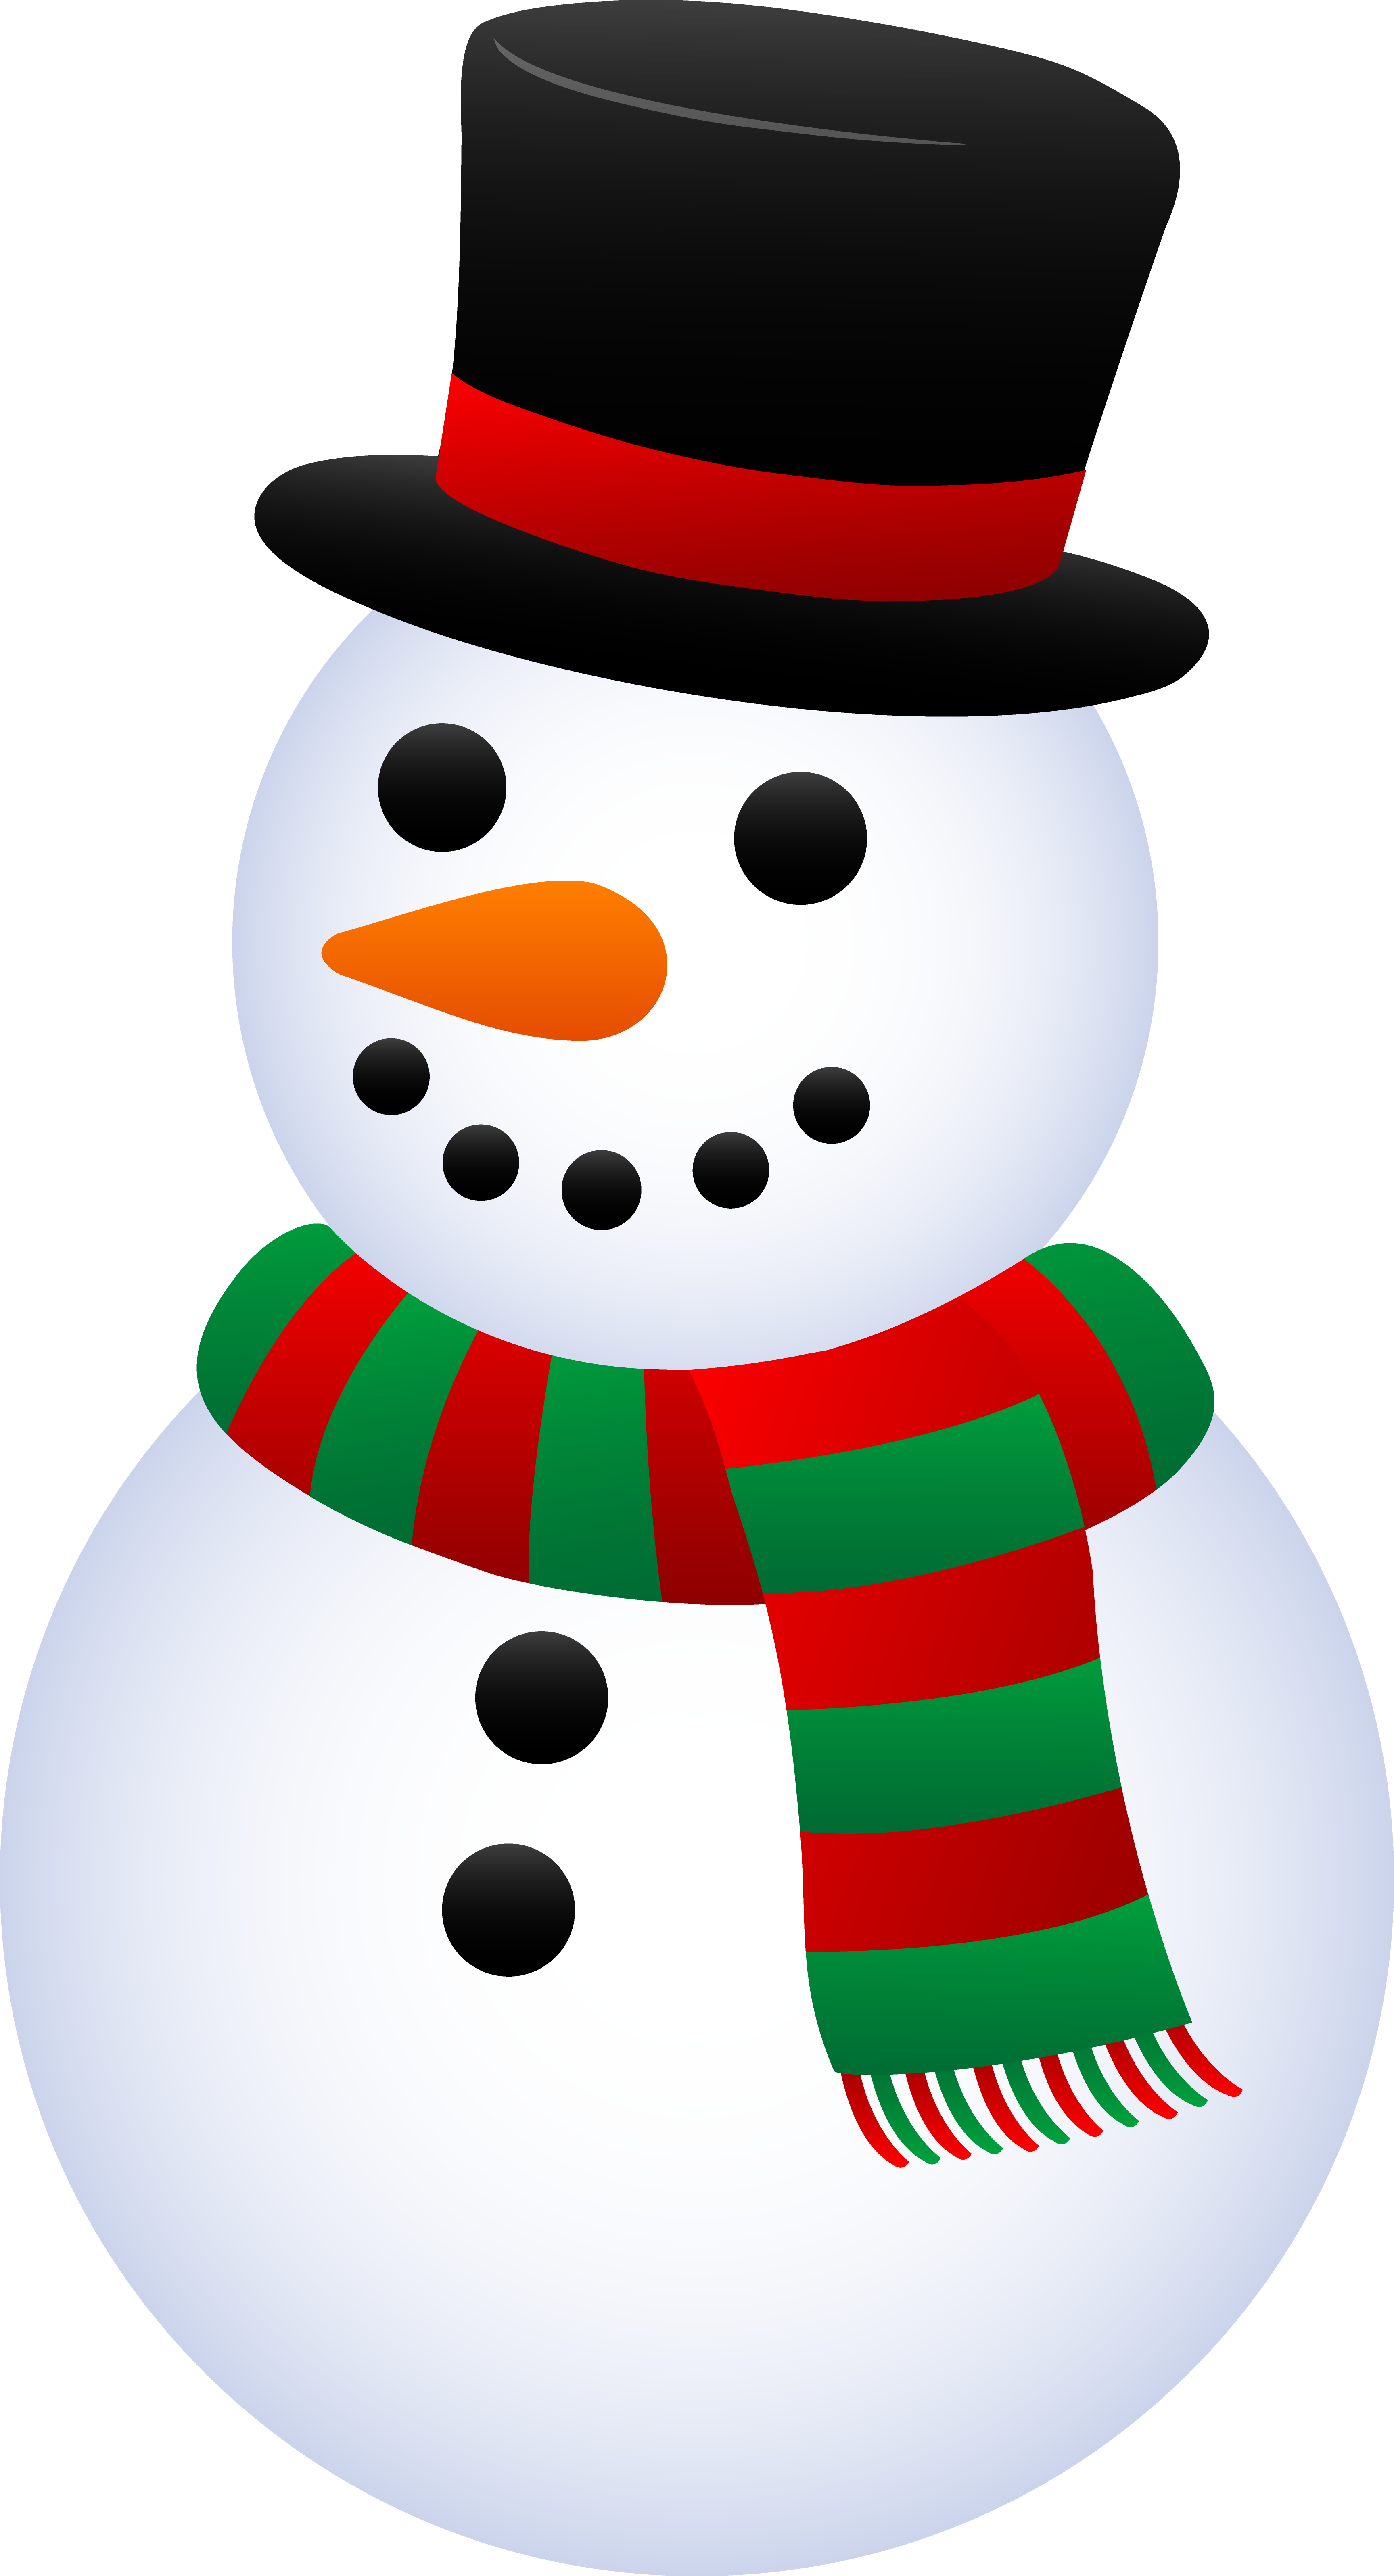 Cute Christmas Snowman - Free Clip Art